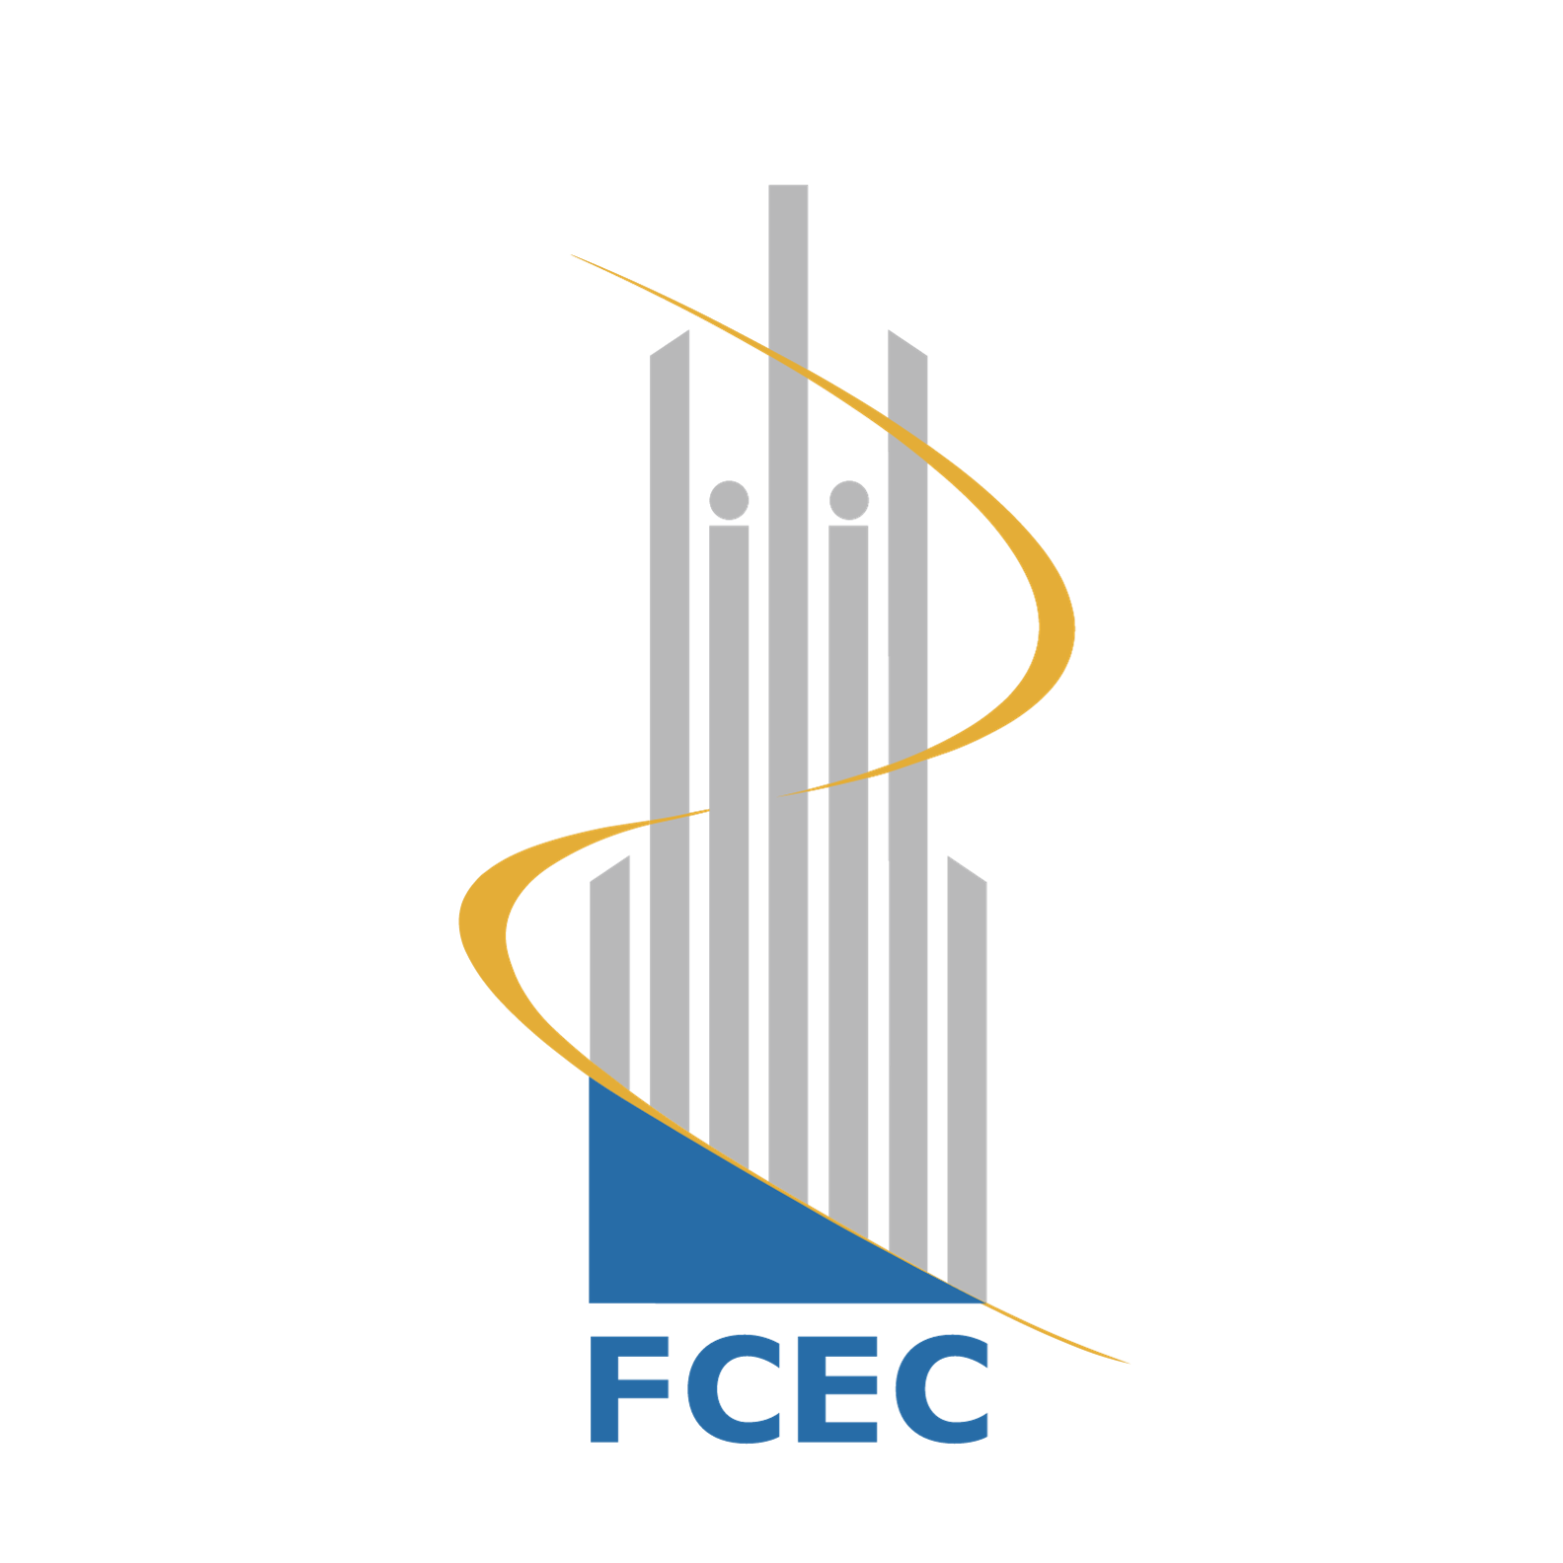 FCEC